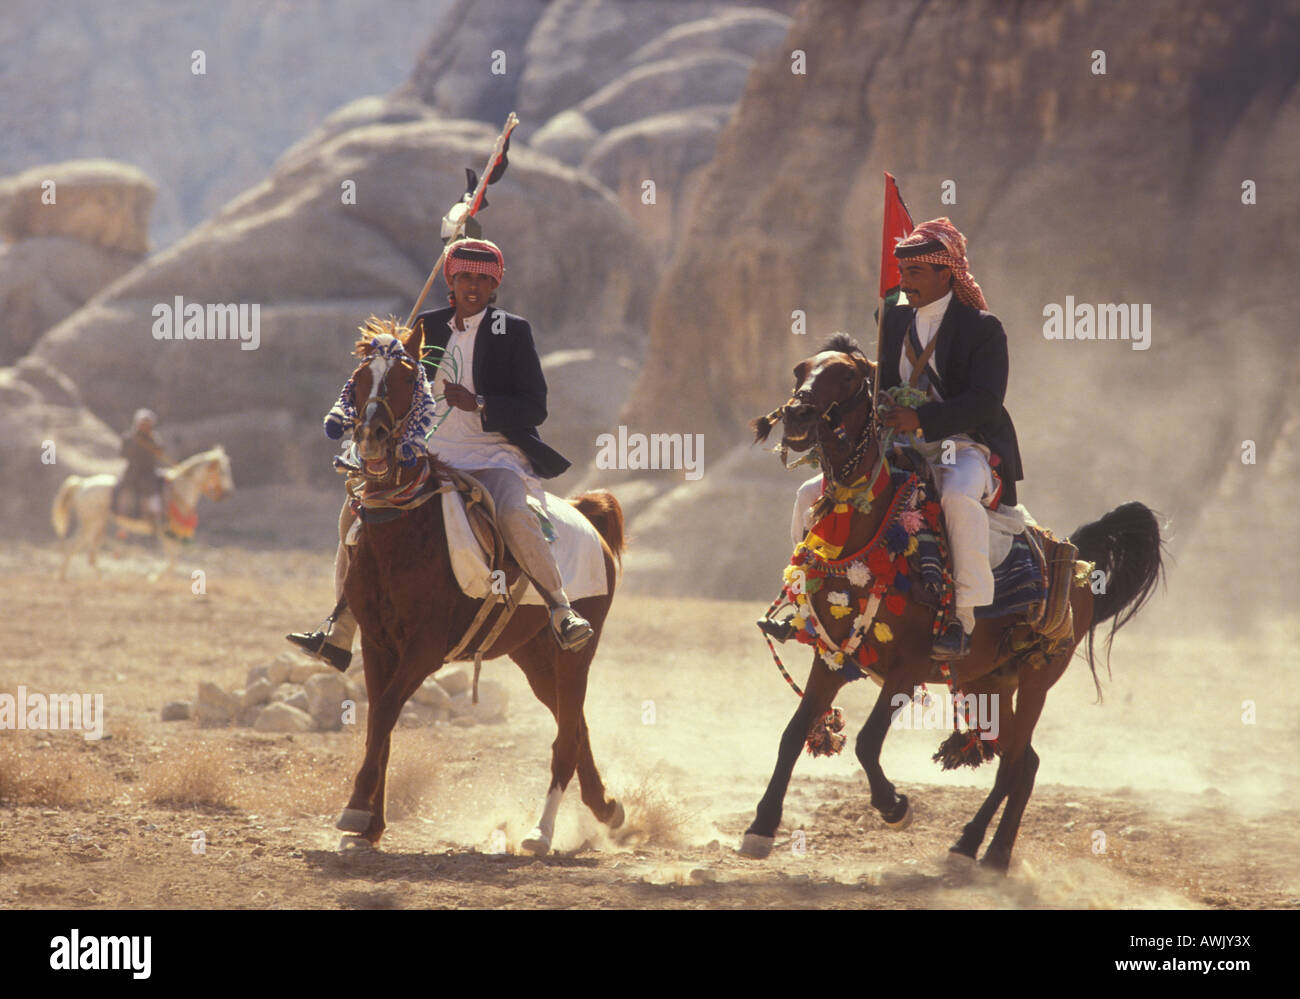 Raising dust as Arab horses and men participate in a horse race in the Jordanian desert, near Petra, Jordan Stock Photo